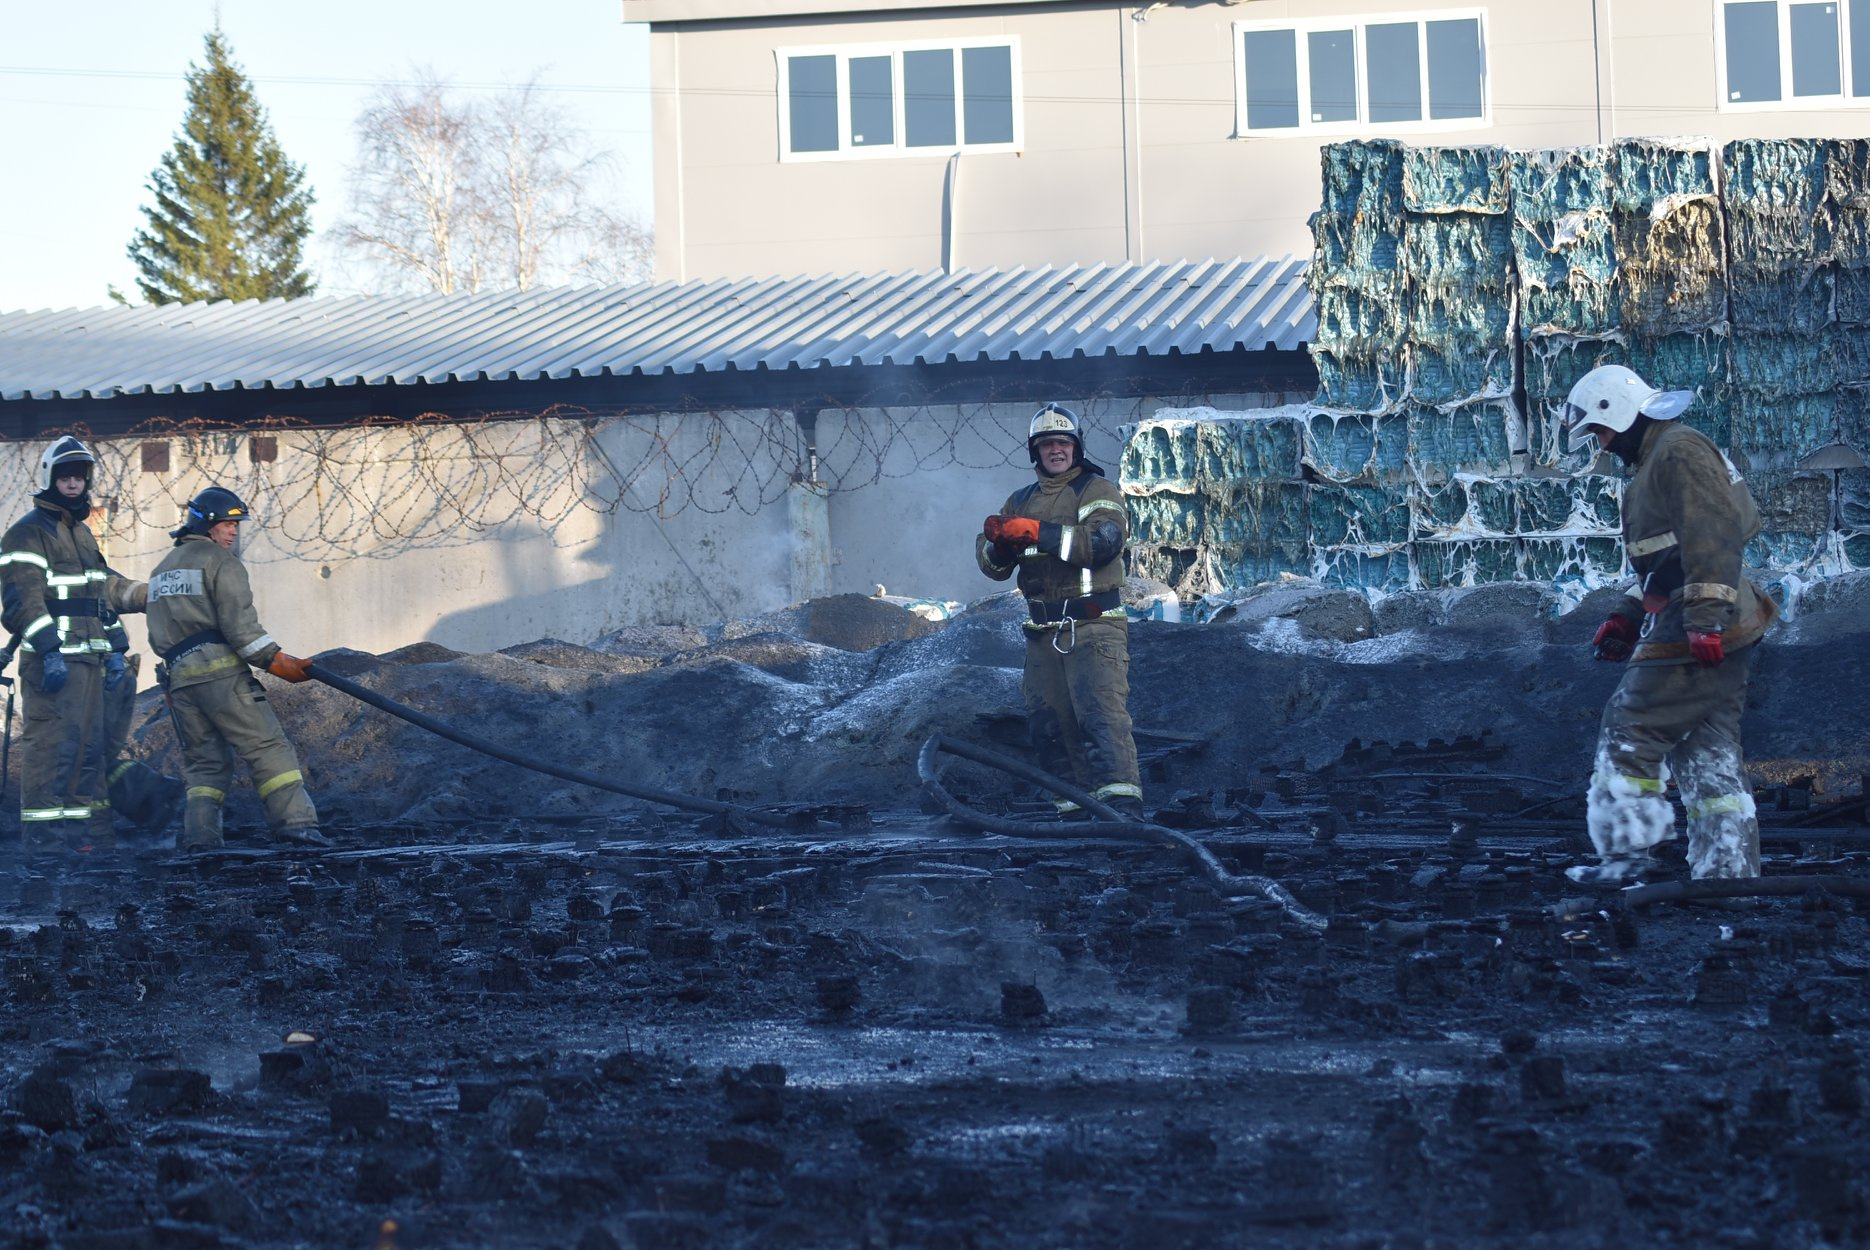 Представители завода, где произошел пожар, пока не готовы рассказать про обстоятельства и причины пожара